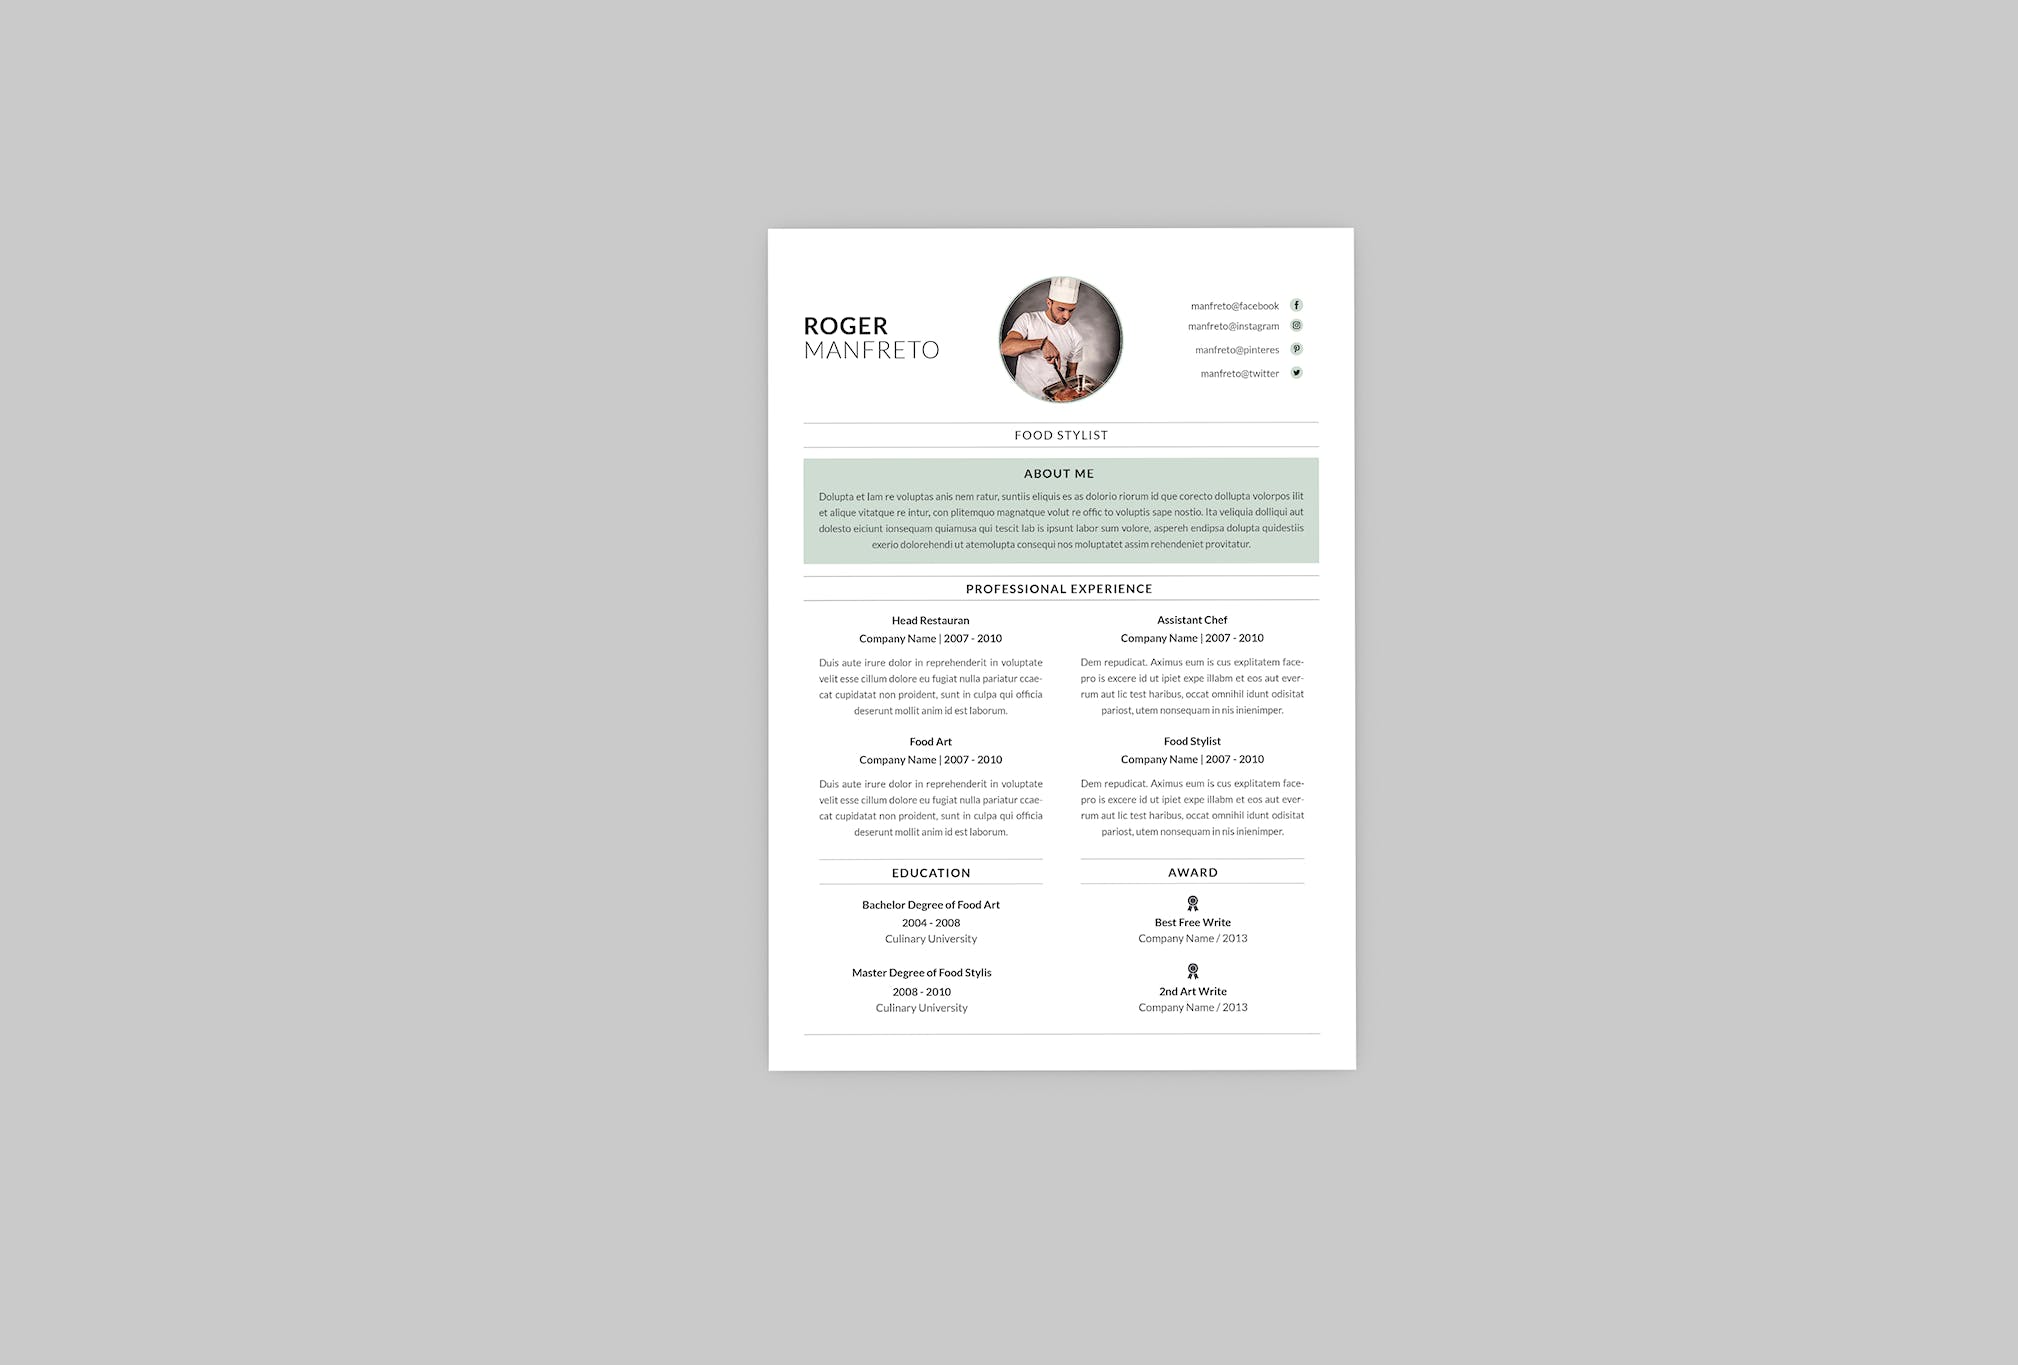 餐饮厨师个人简历模板下载 Food Stylist Resume Designer插图(2)